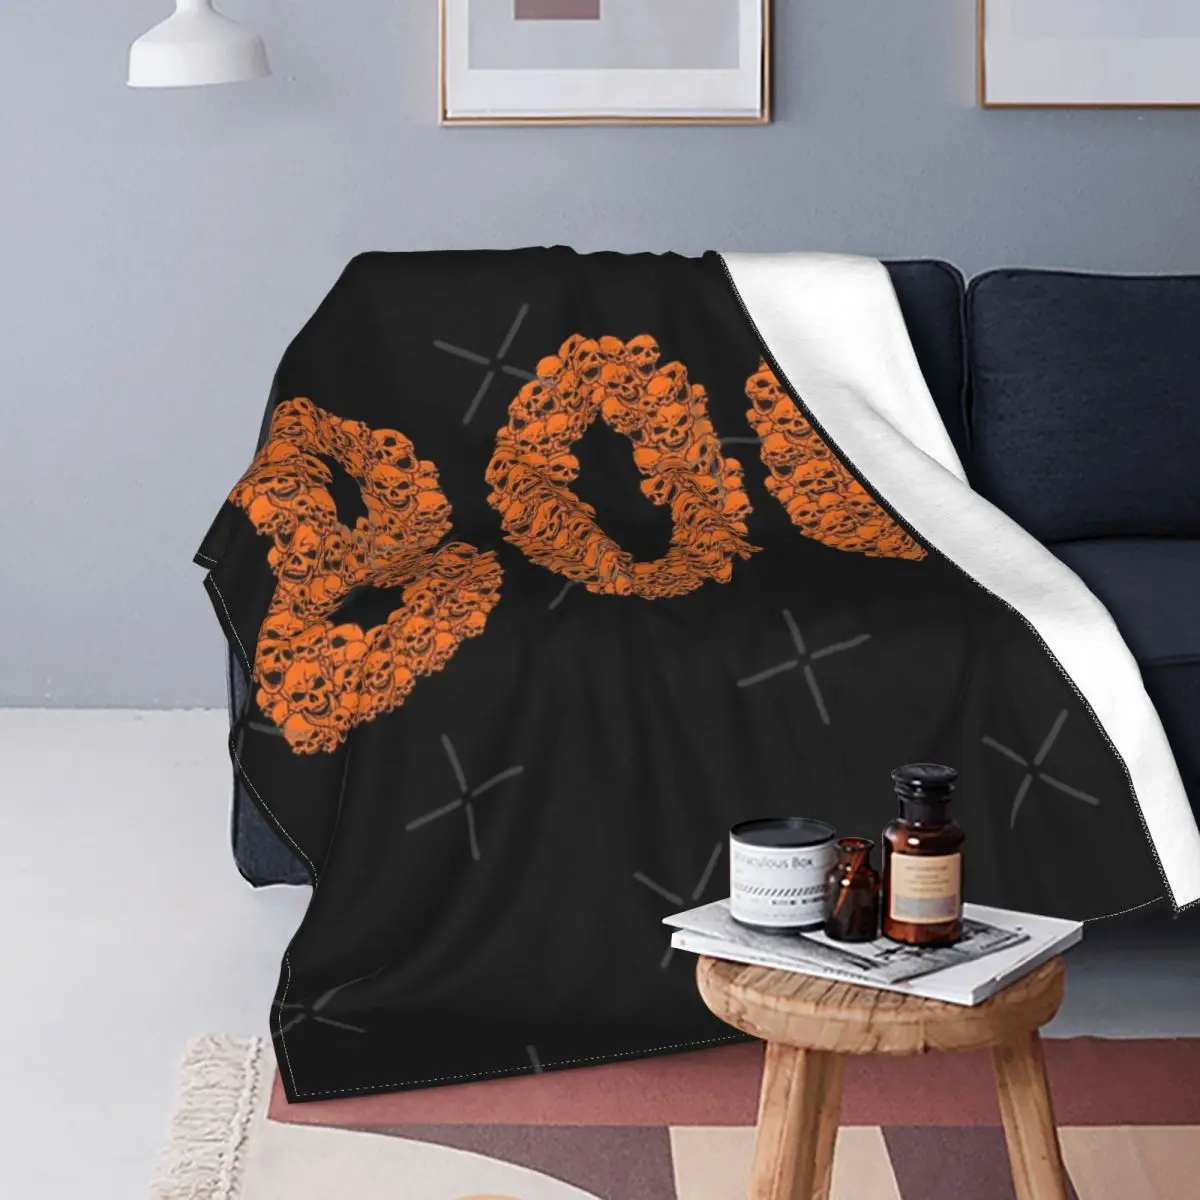 

Boo-Хэллоуин Черепа 2 одеяло покрывало для кровати клетчатый ковер покрывала летнее одеяло пляжное полотенце роскошное